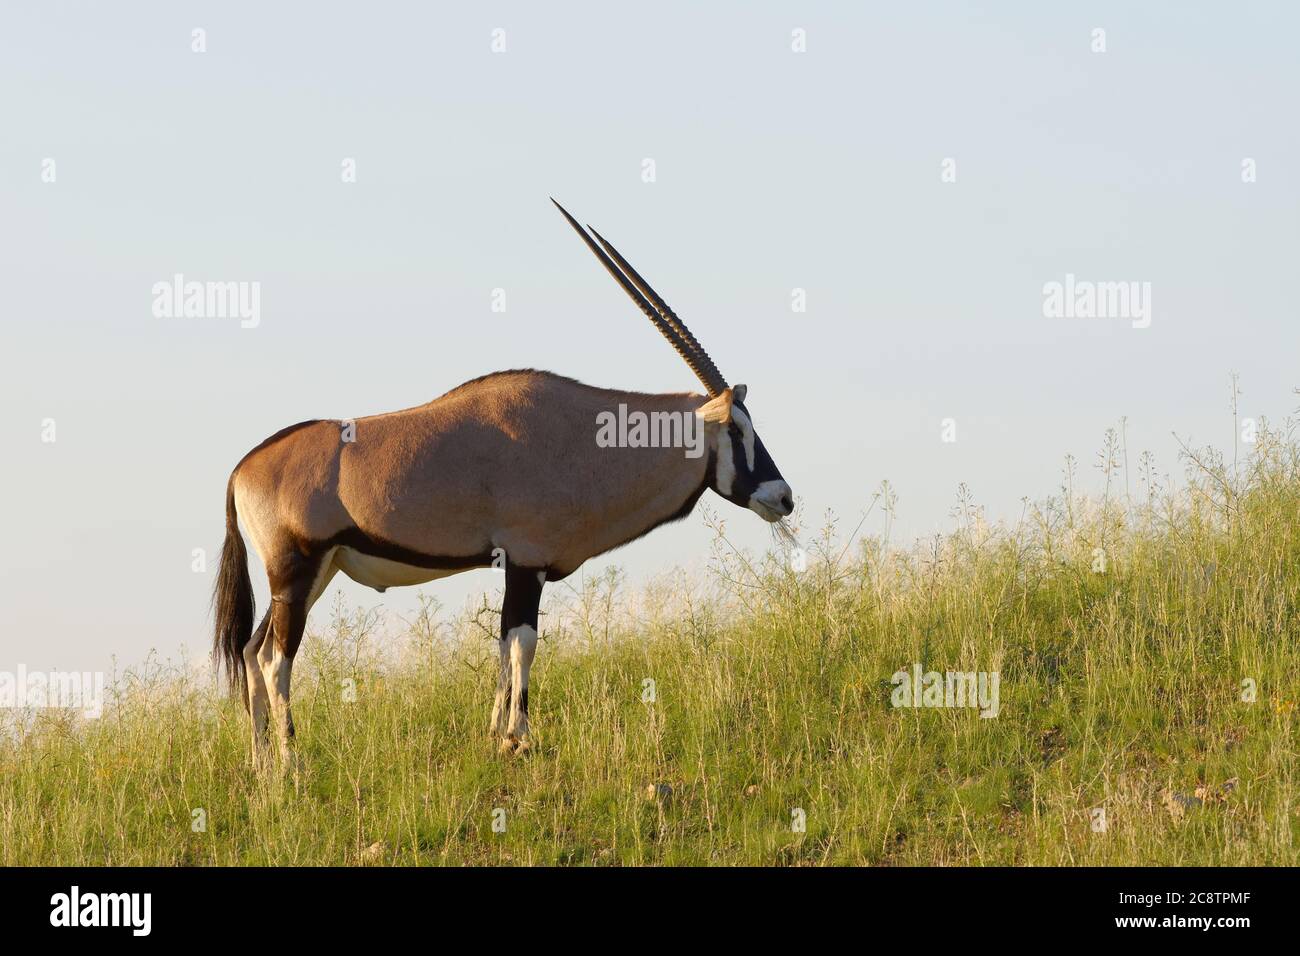 Gemsbok (Oryx gazella), erwachsenes Männchen, auf der Sanddüne, auf Gras fütternd, Kgalagadi Transfrontier Park, Nordkap, Südafrika, Afrika Stockfoto